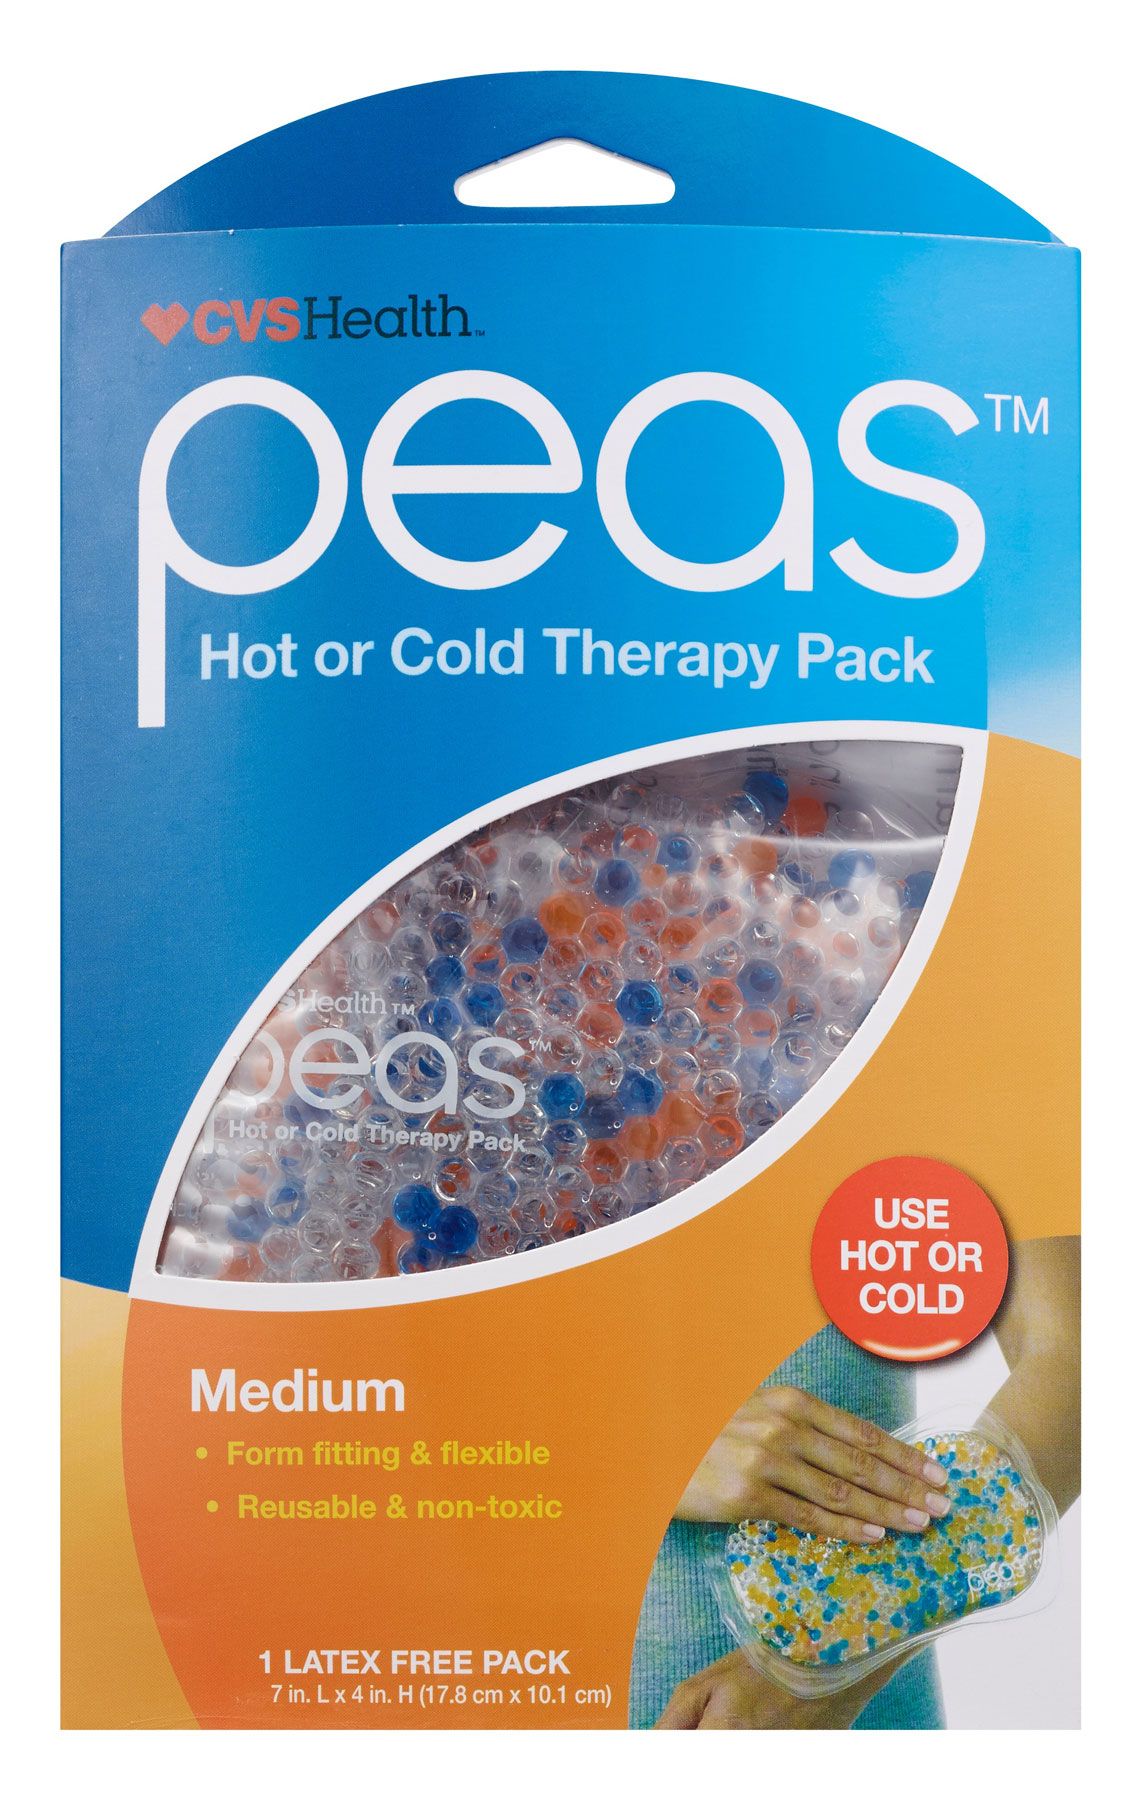 Geschenke für Kranke oder Verletzte und Quarantäne-Geschenkideen - CVS Health Peas Hot or Cold Therapy Pack